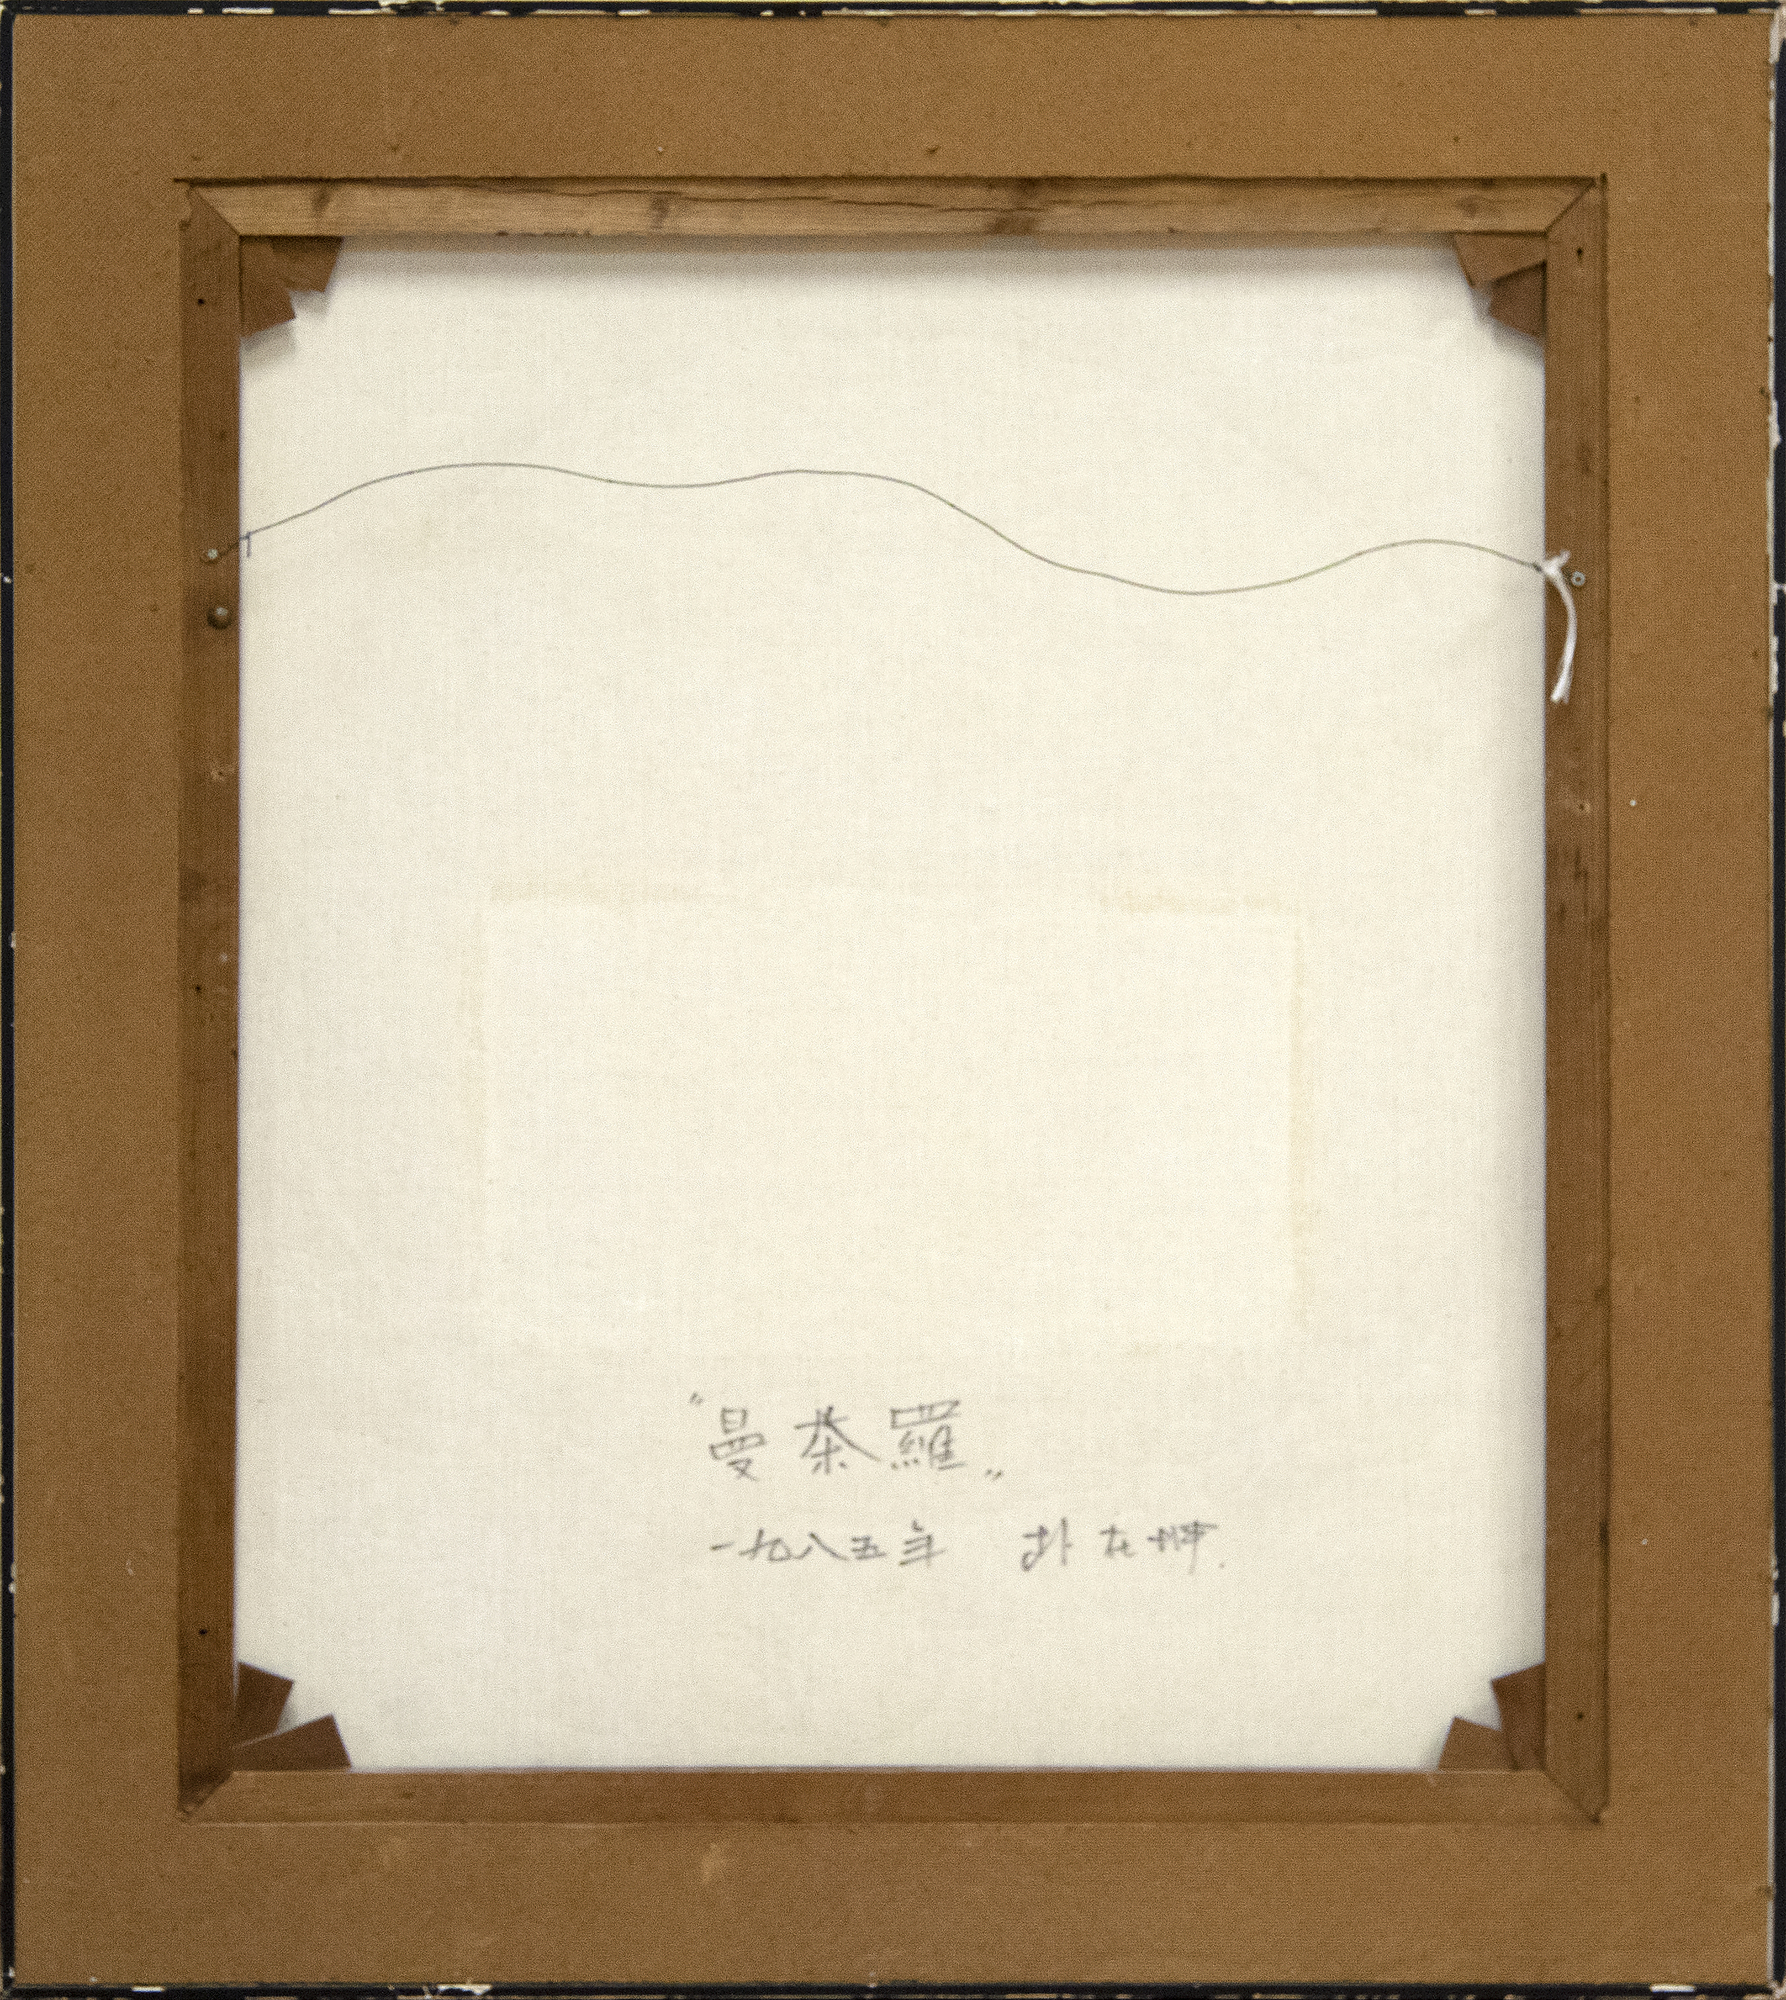 JAE KON PARK - 無題 - キャンバスに油彩 - 31 3/4 x 27 1/2インチ。